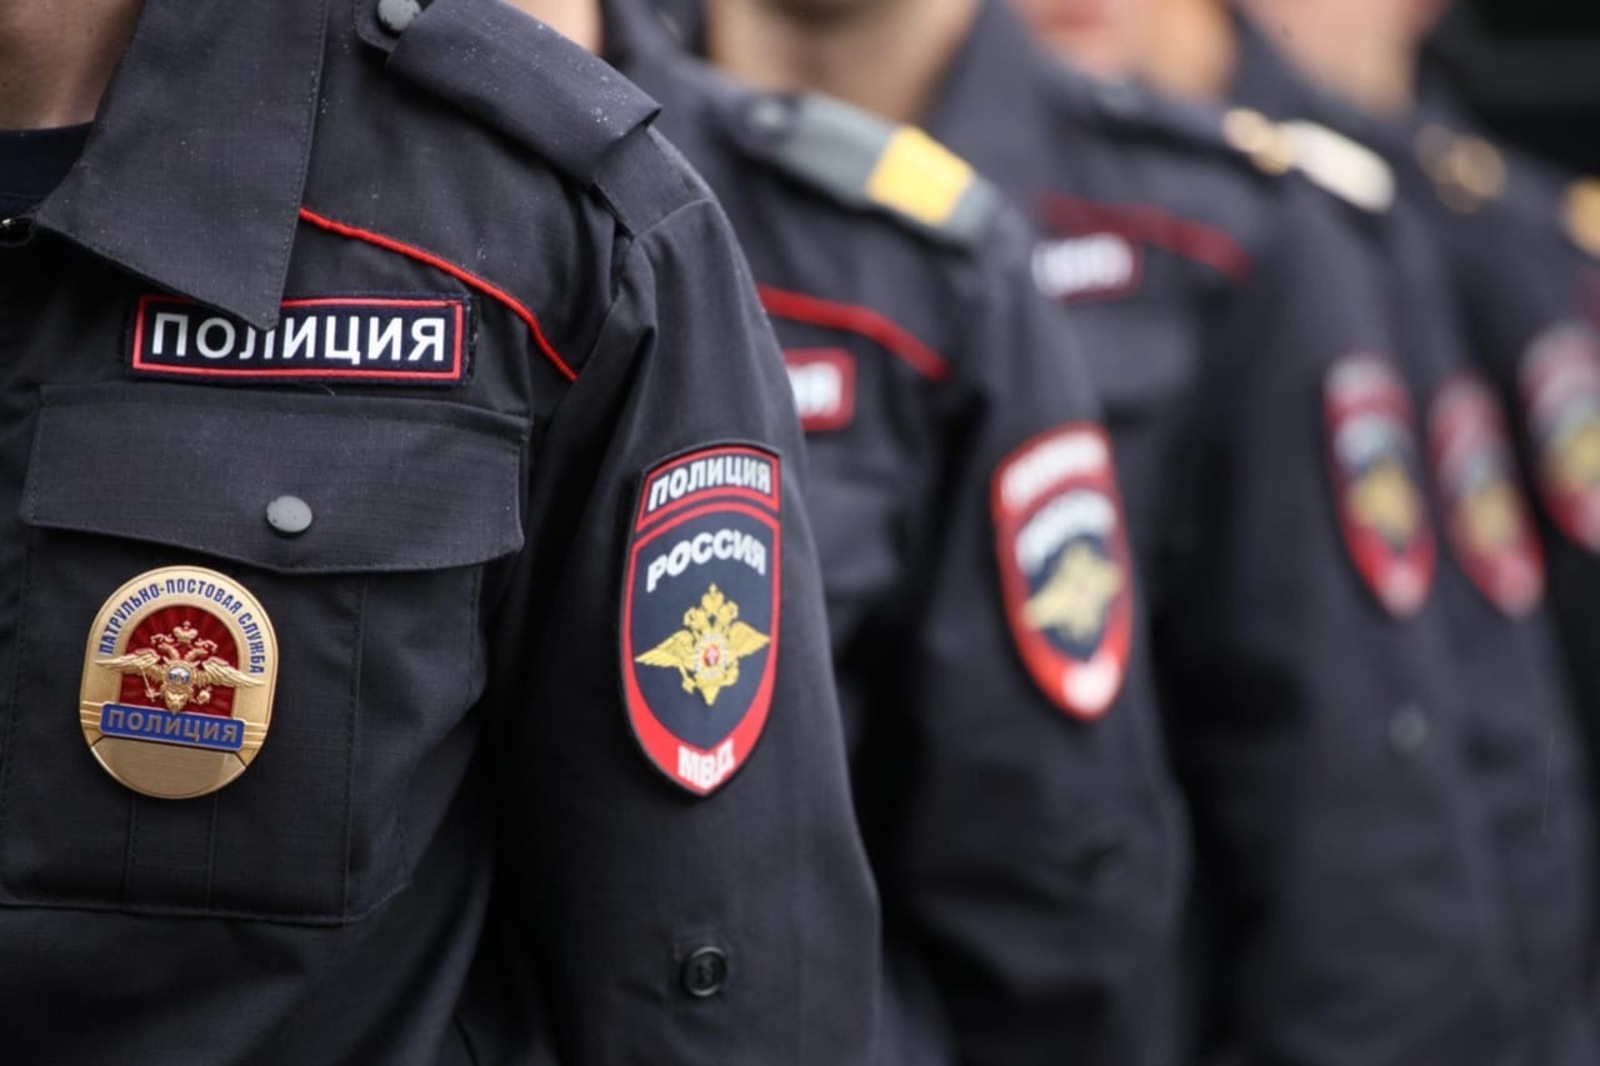 Октябрьскими полицейскими в суд направлено уголовное дело по факту кражи сотового телефона